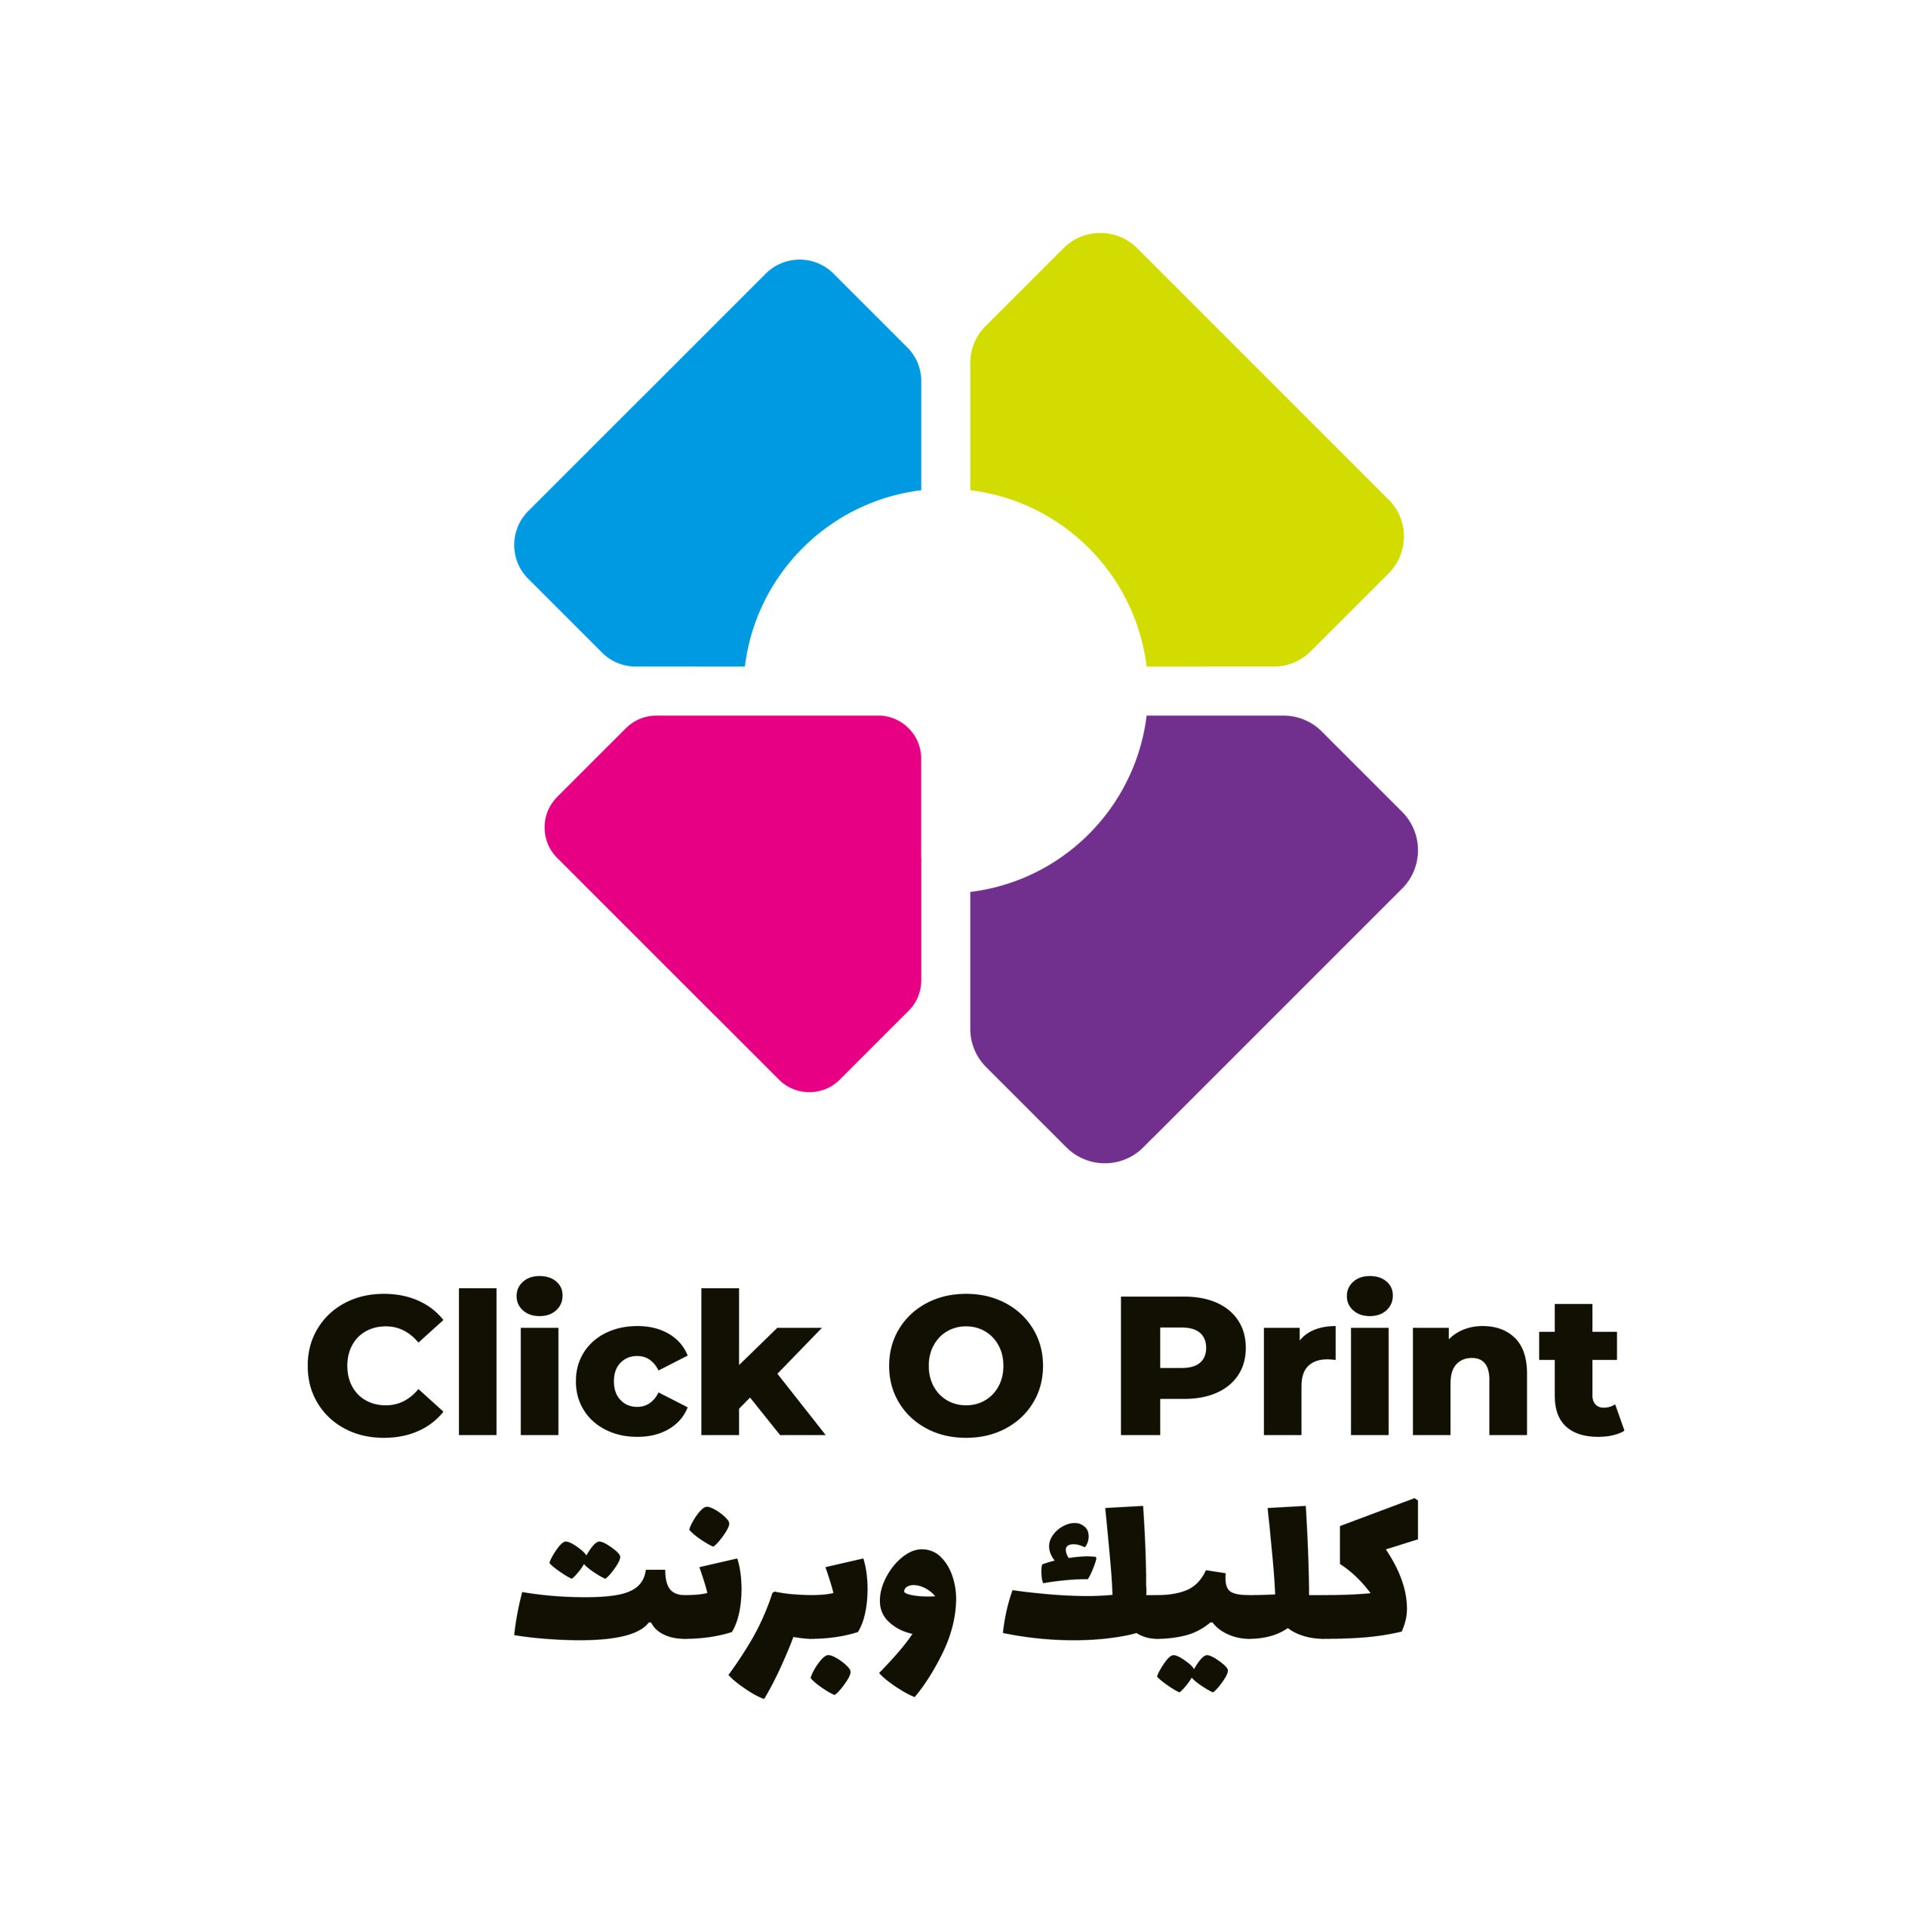 Click O Print